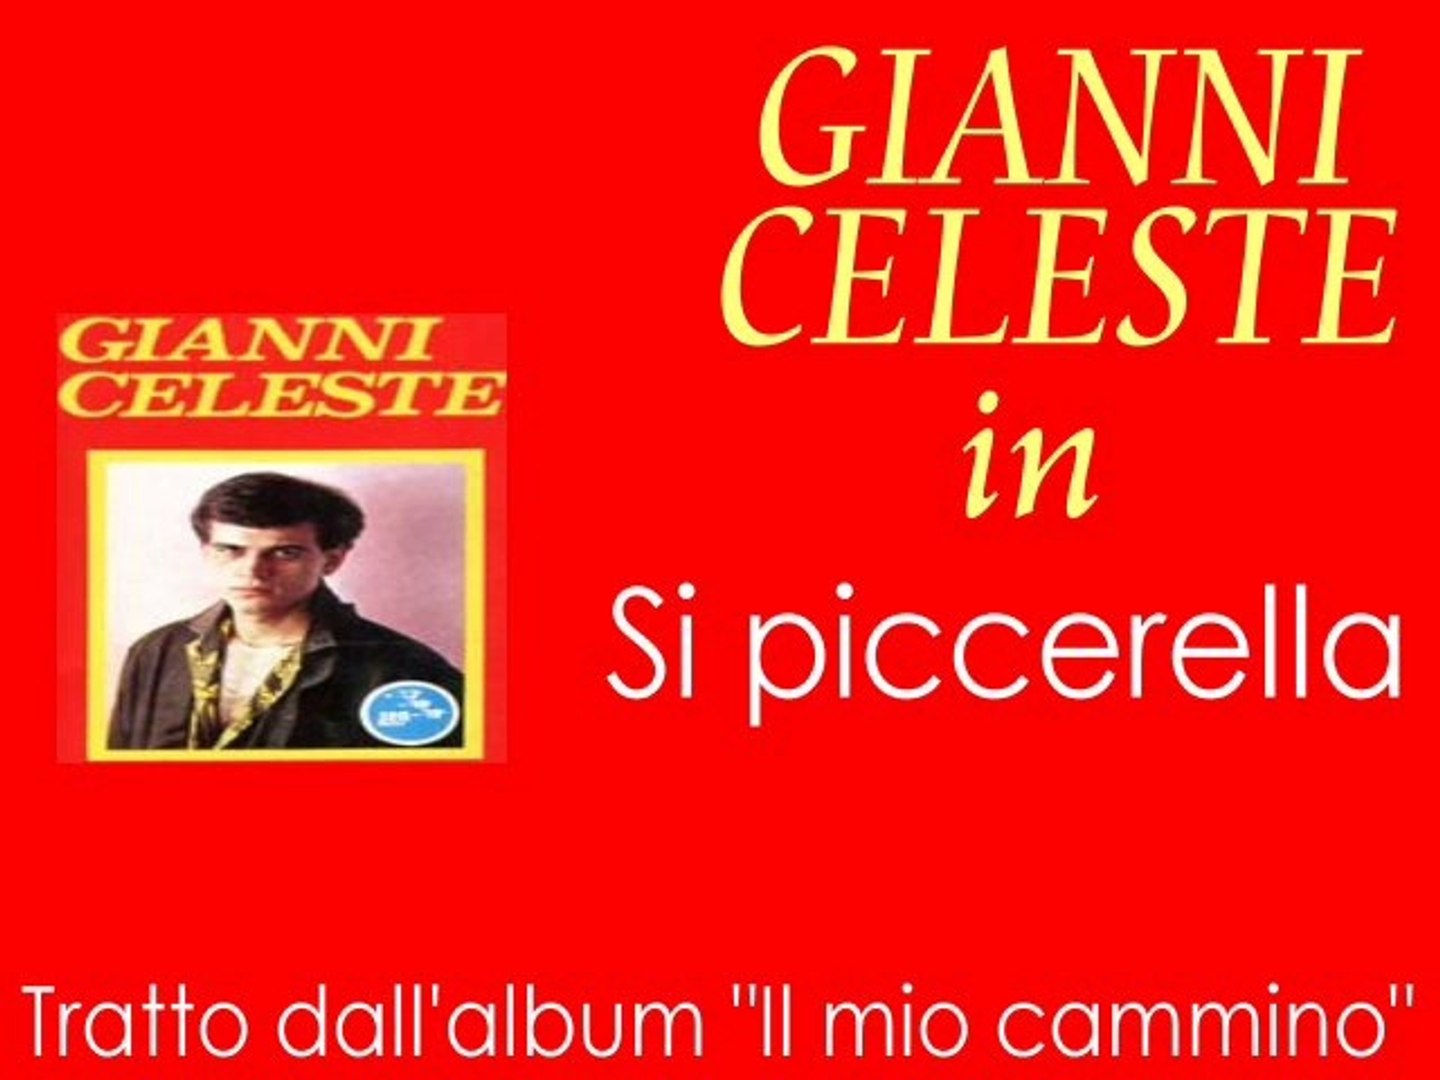 Gianni Celeste - Si piccerella by IvanRubacuori88 - Video Dailymotion